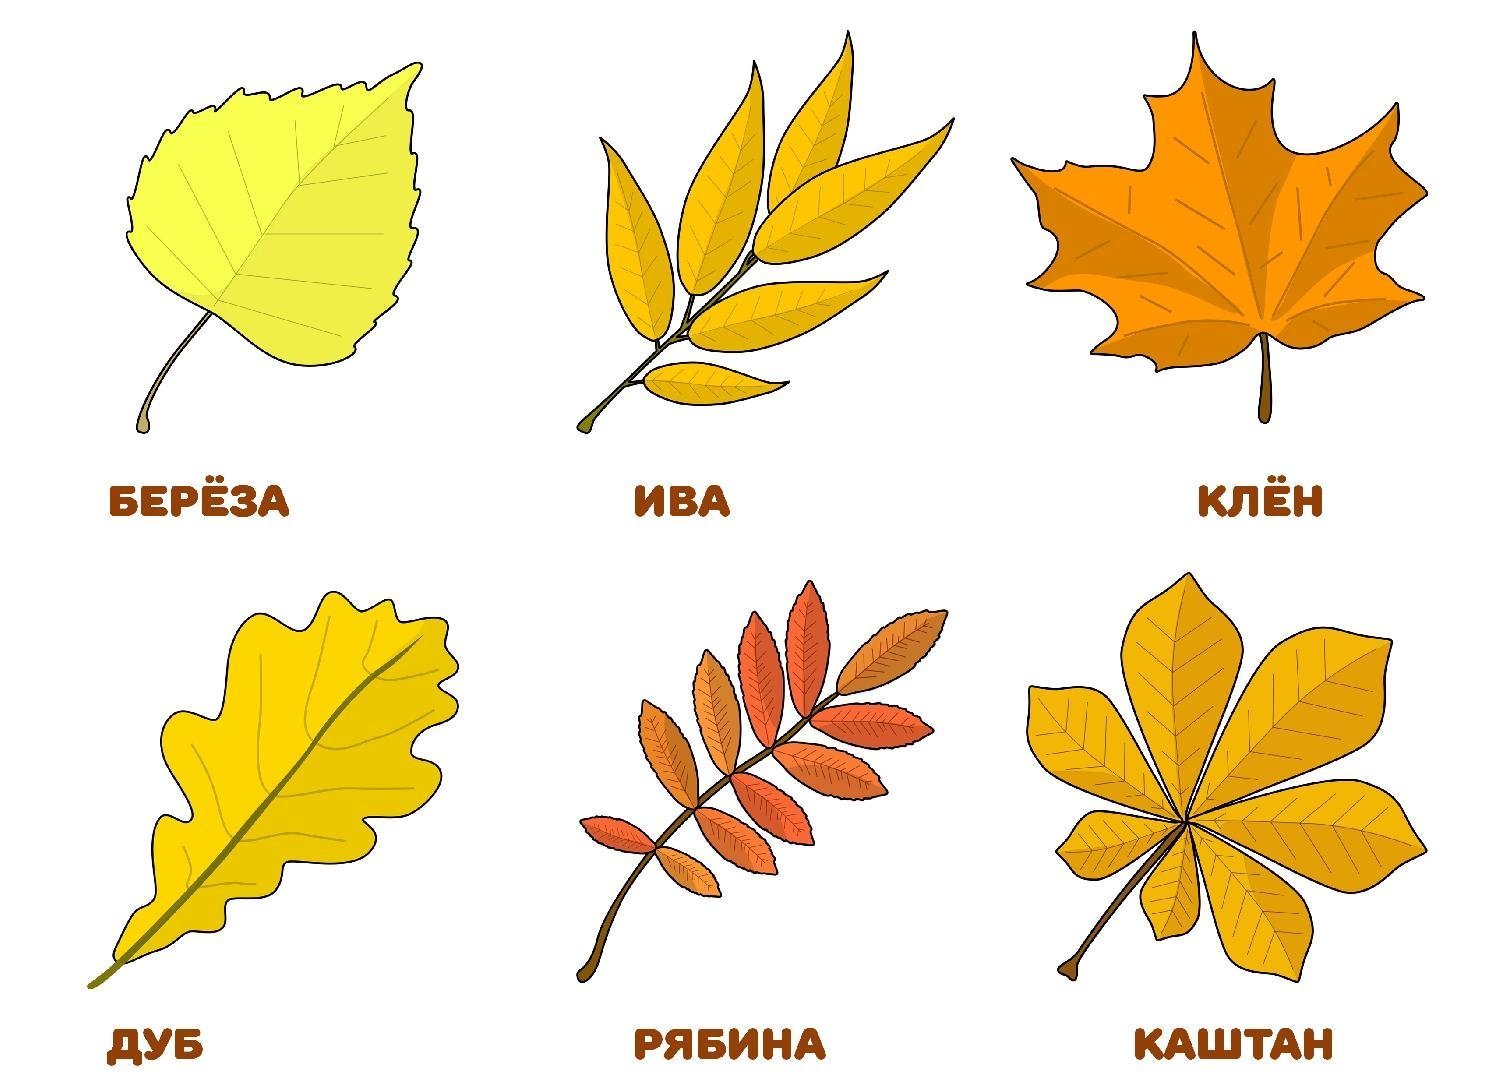 фото листьев деревьев с названиями